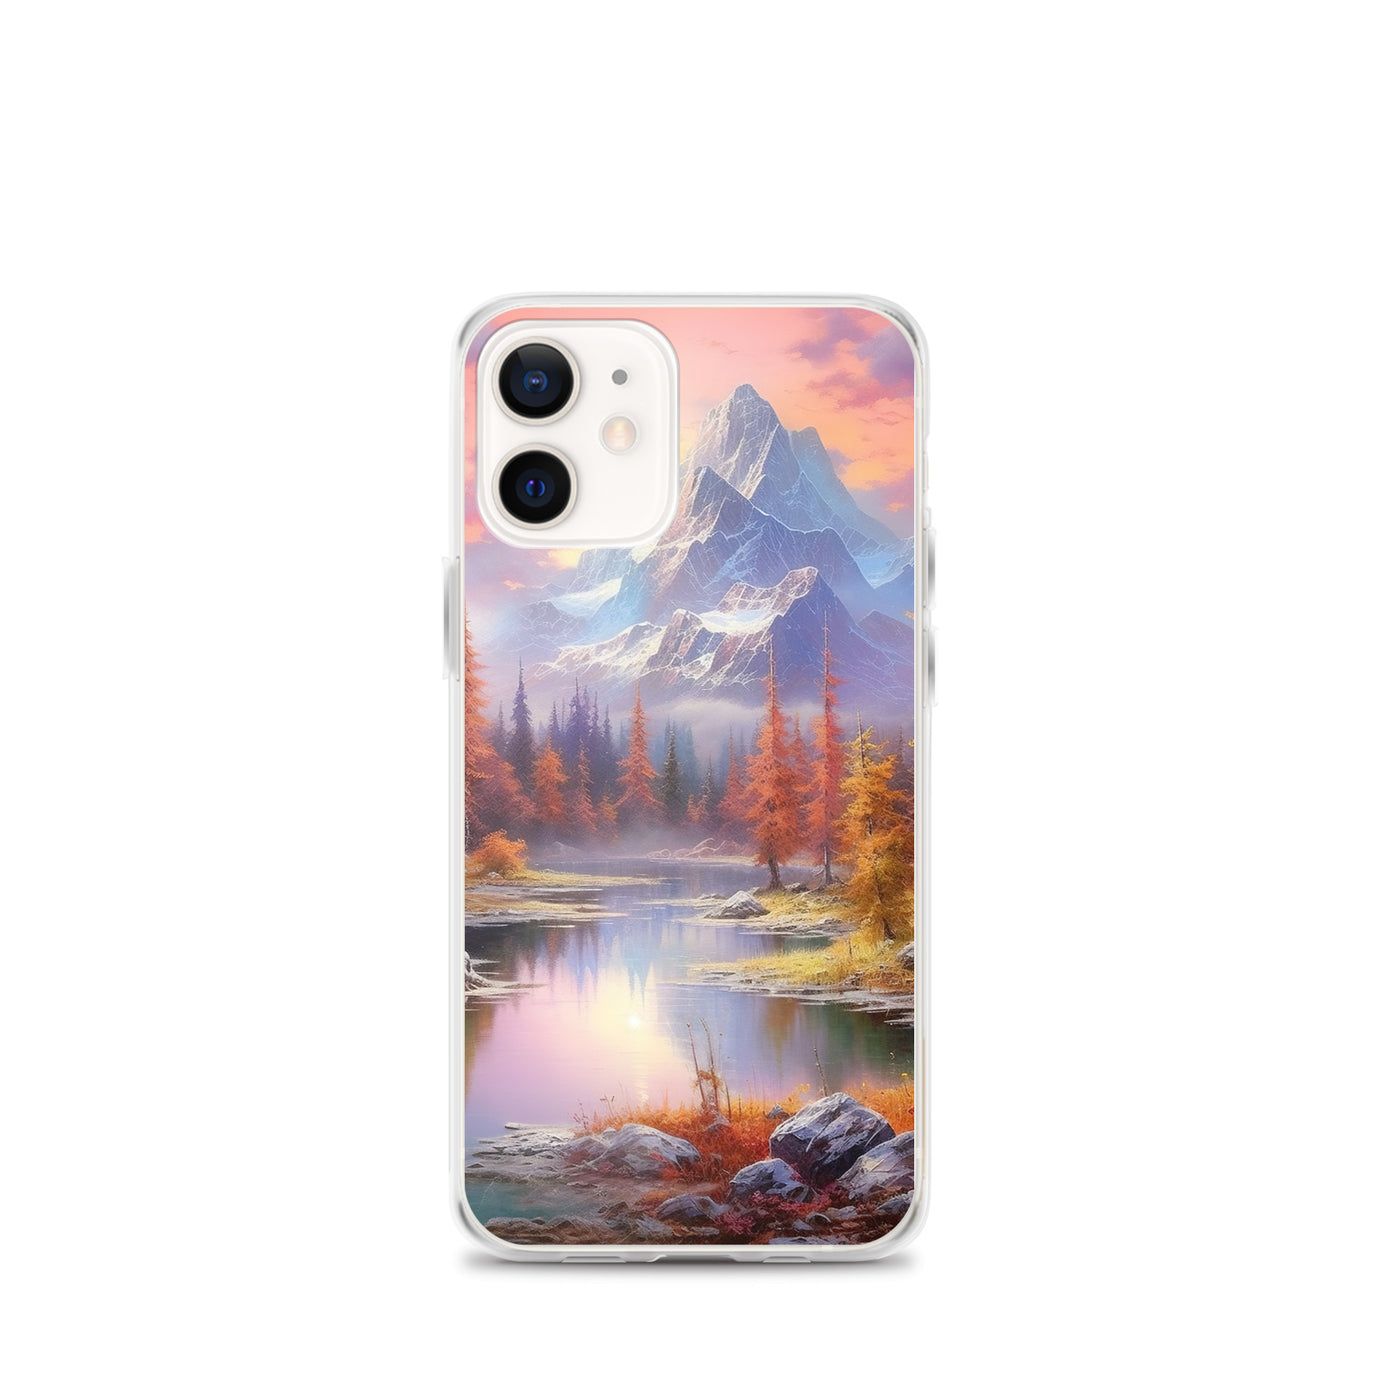 Landschaftsmalerei - Berge, Bäume, Bergsee und Herbstfarben - iPhone Schutzhülle (durchsichtig) berge xxx iPhone 12 mini